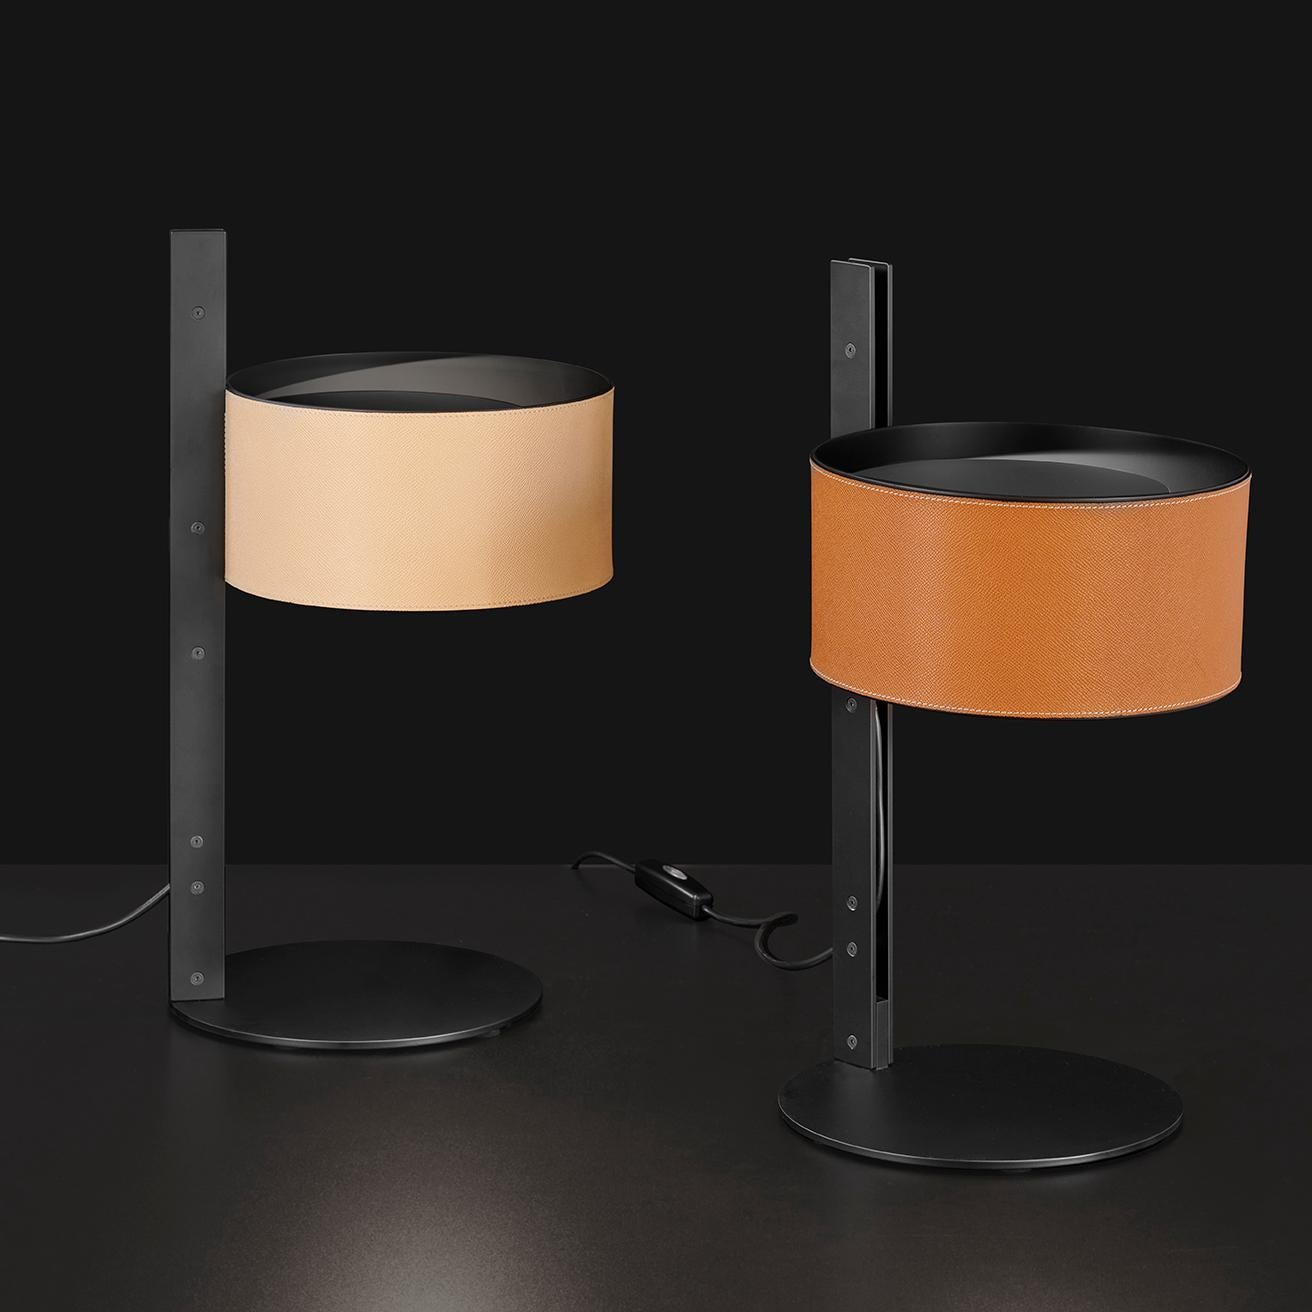 Die von Victor Vasilev entworfene Tischleuchte Parallele besteht aus einem zylindrischen Lampenschirm aus Metall, der von einem seitlich angeordneten vertikalen Stiel getragen wird. Der Stiel besteht aus zwei mattschwarzen Metallplatten, die im